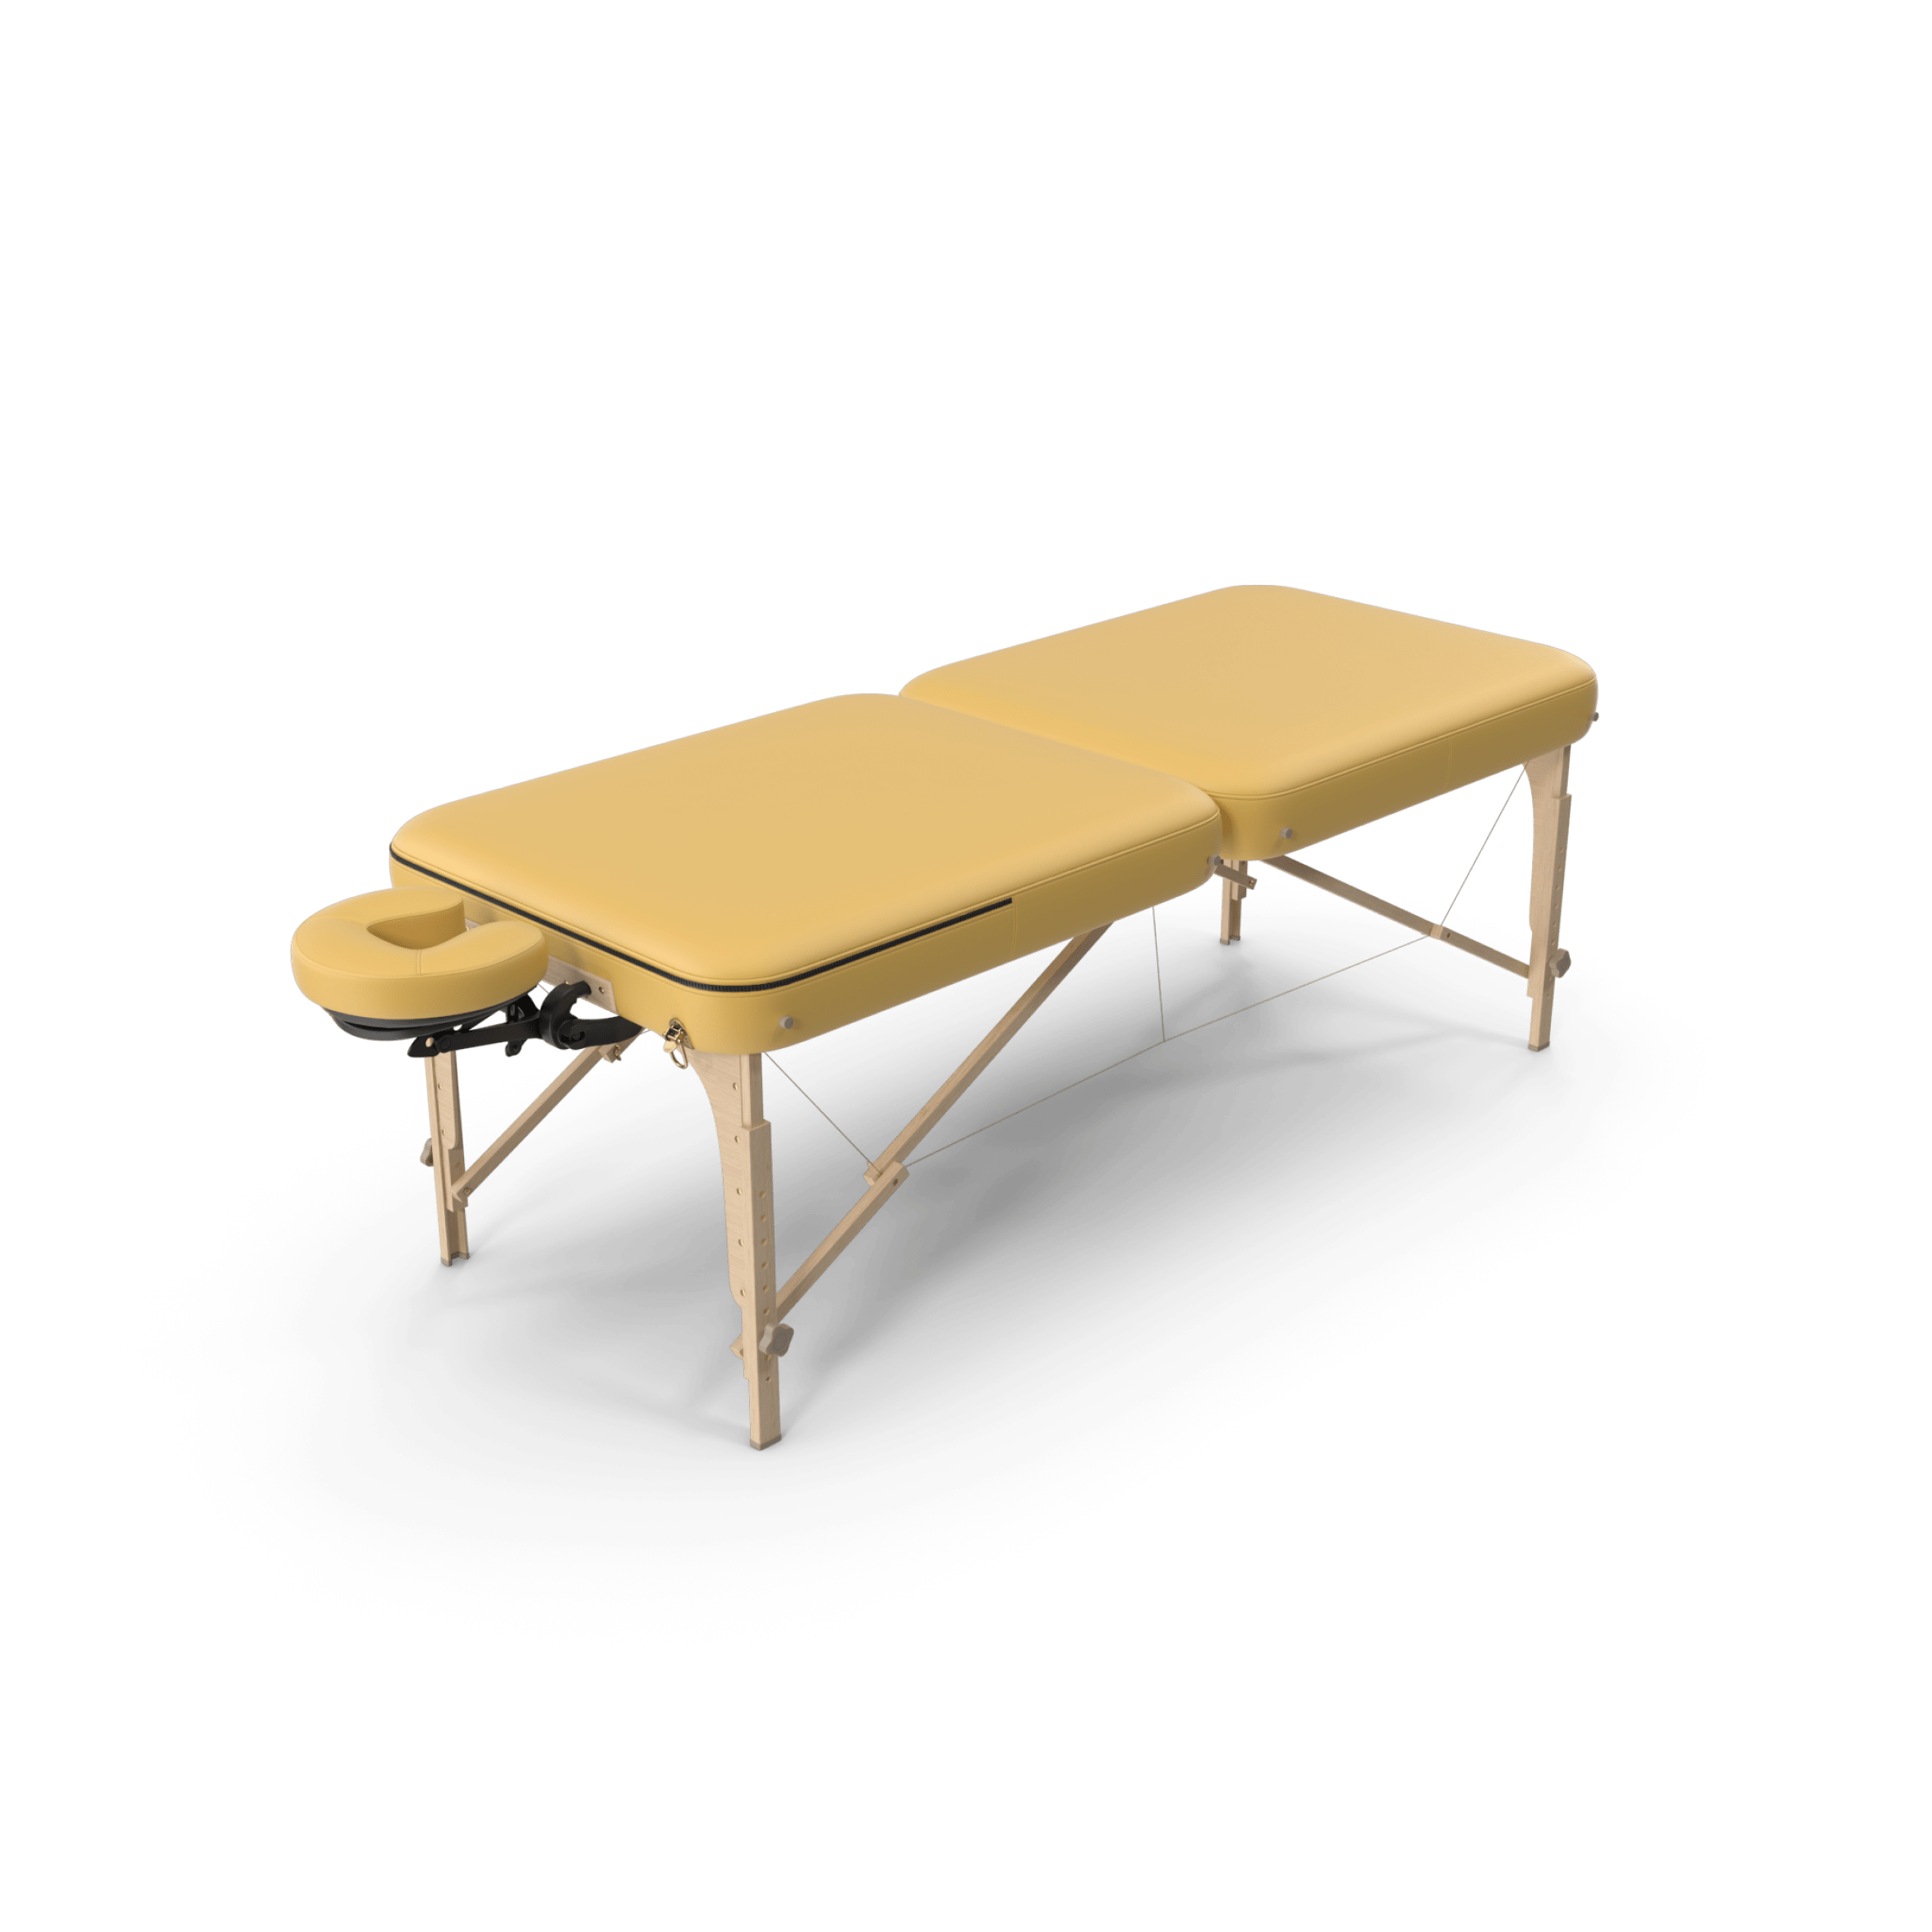 Массажный стол складной body Sculpture BM-1310. Массажный стол Ямагучи Киото. Массажный стол кожзам. Чехол на массажный стол